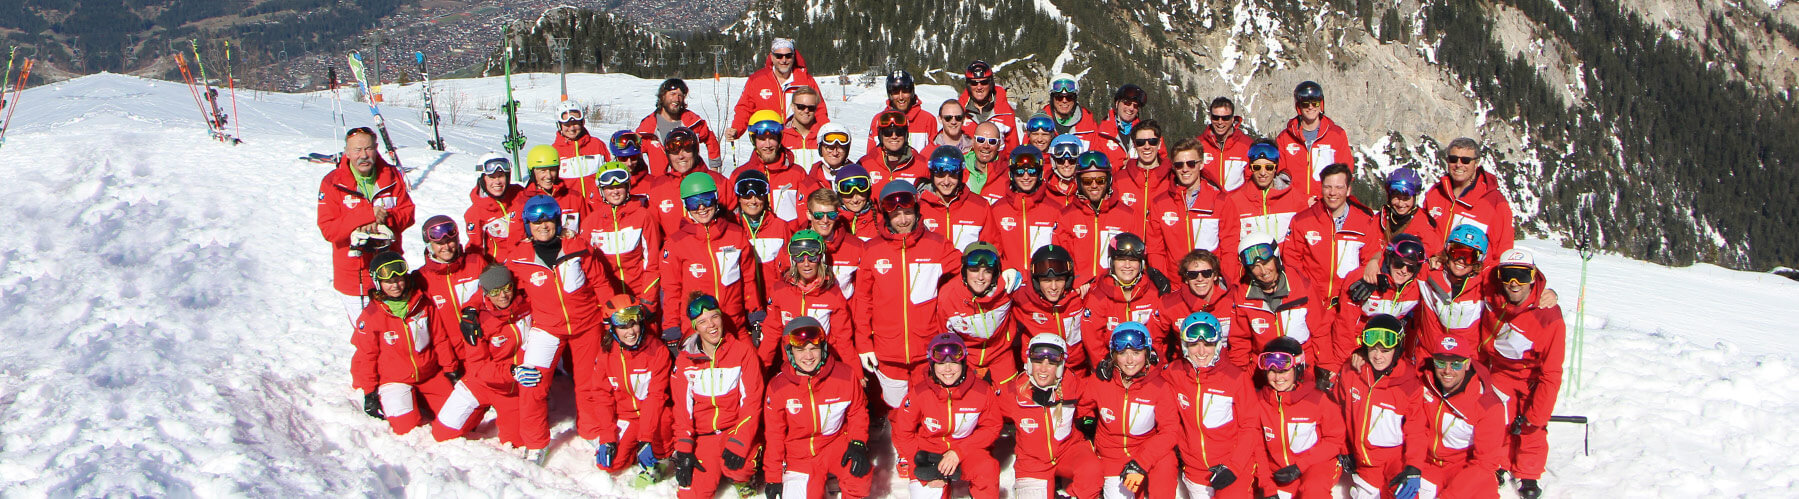 das team der skischule garmisch-partenkirchen